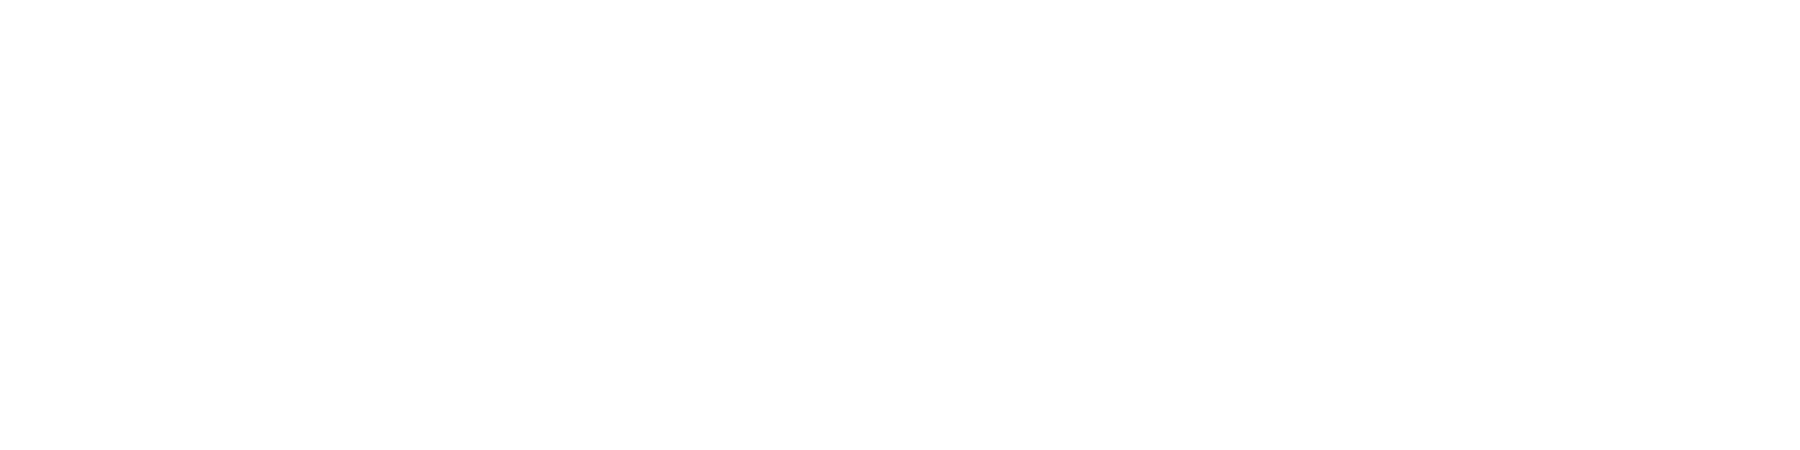 BeeGeek Logo